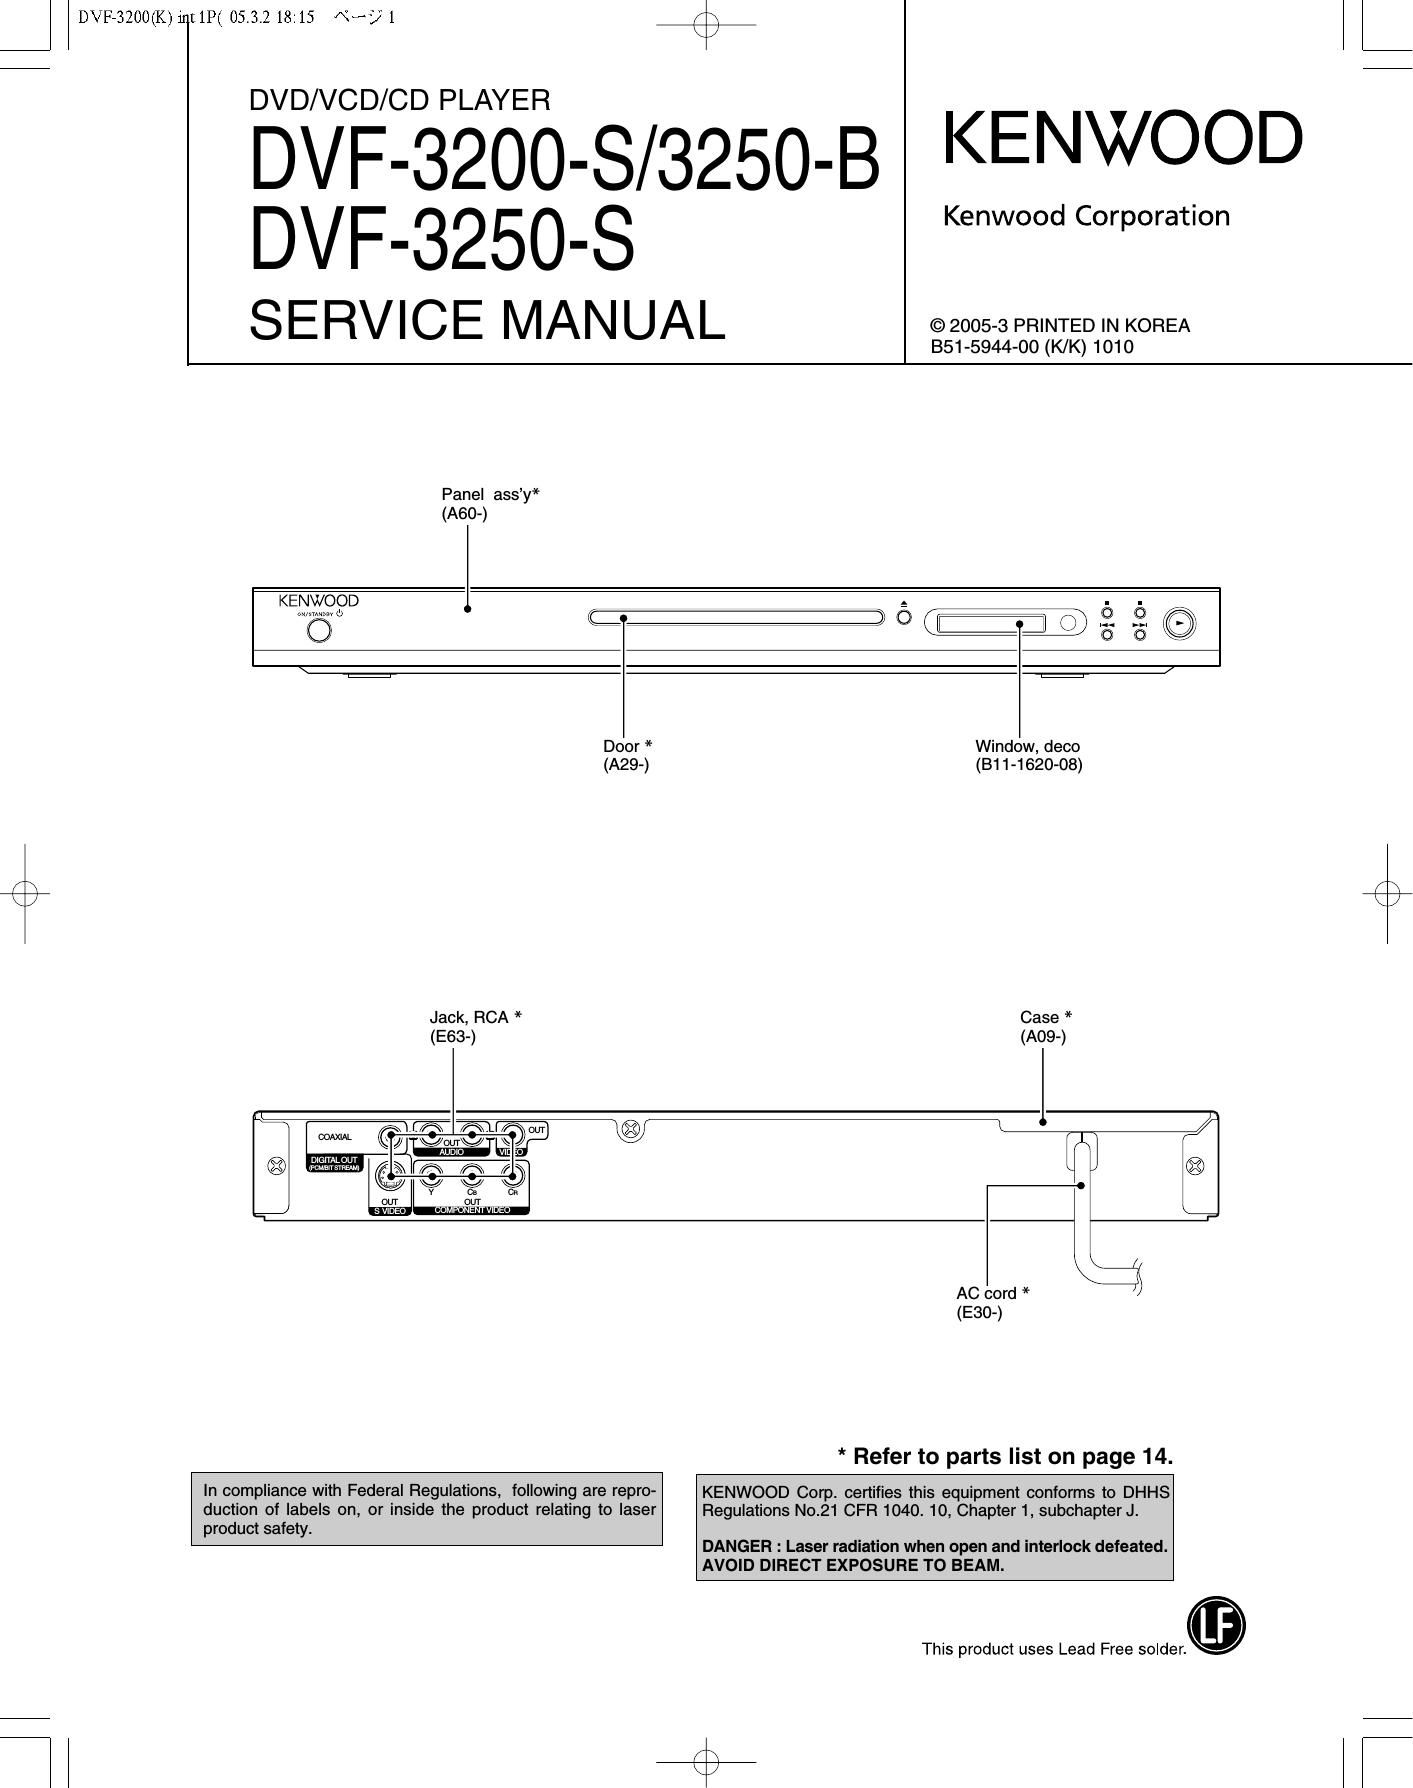 Kenwood DVF 3250 B Service Manual